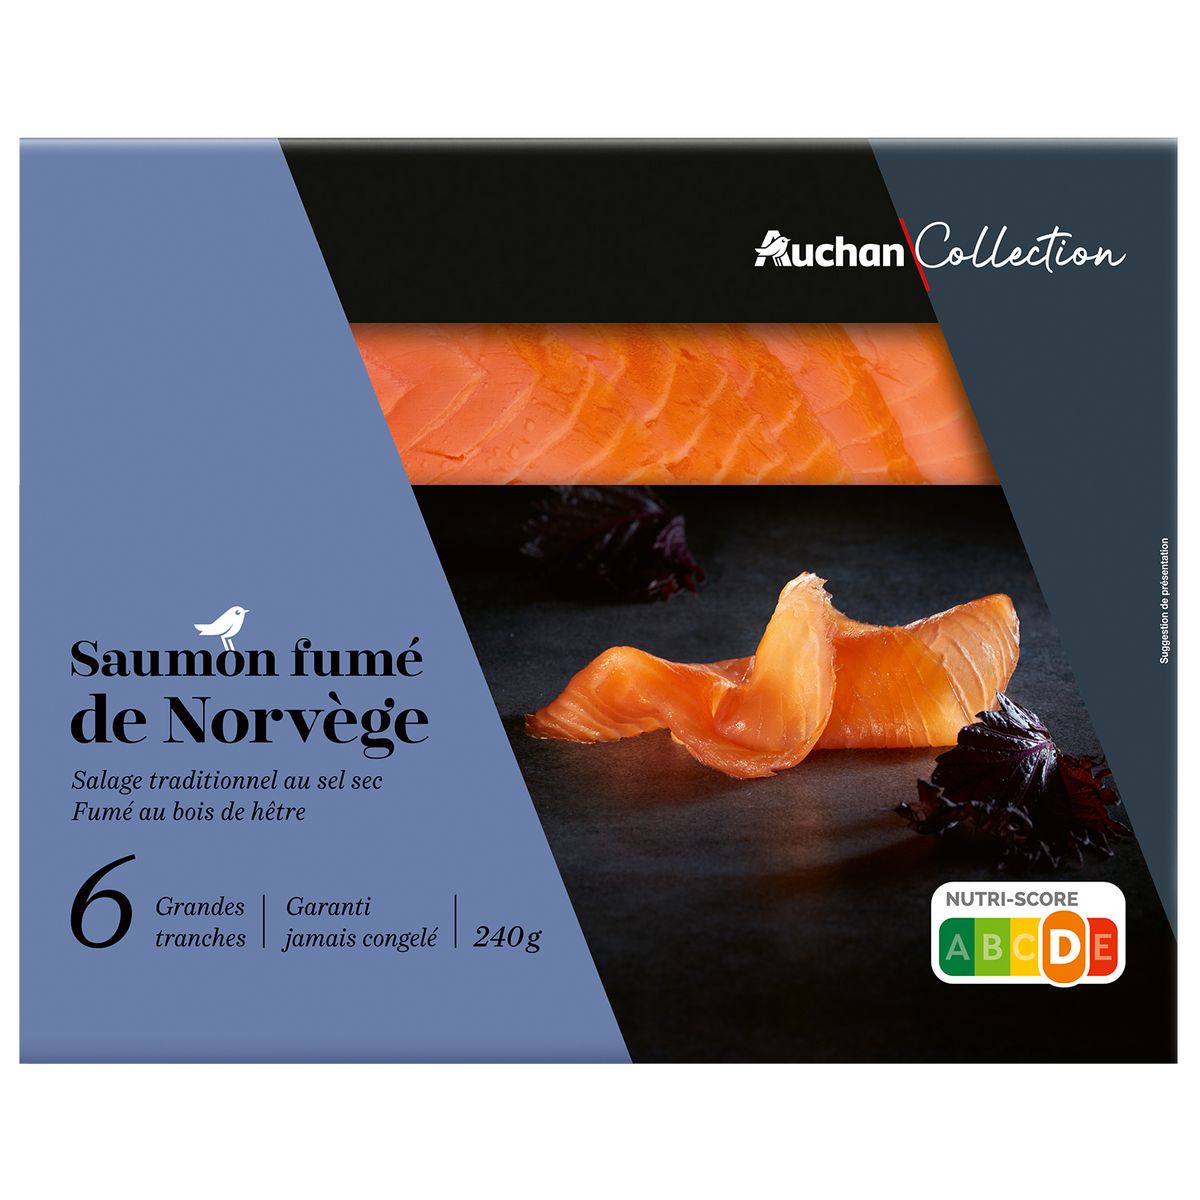 AUCHAN COLLECTION Saumon fumé de Norvège 6 tranches 240g